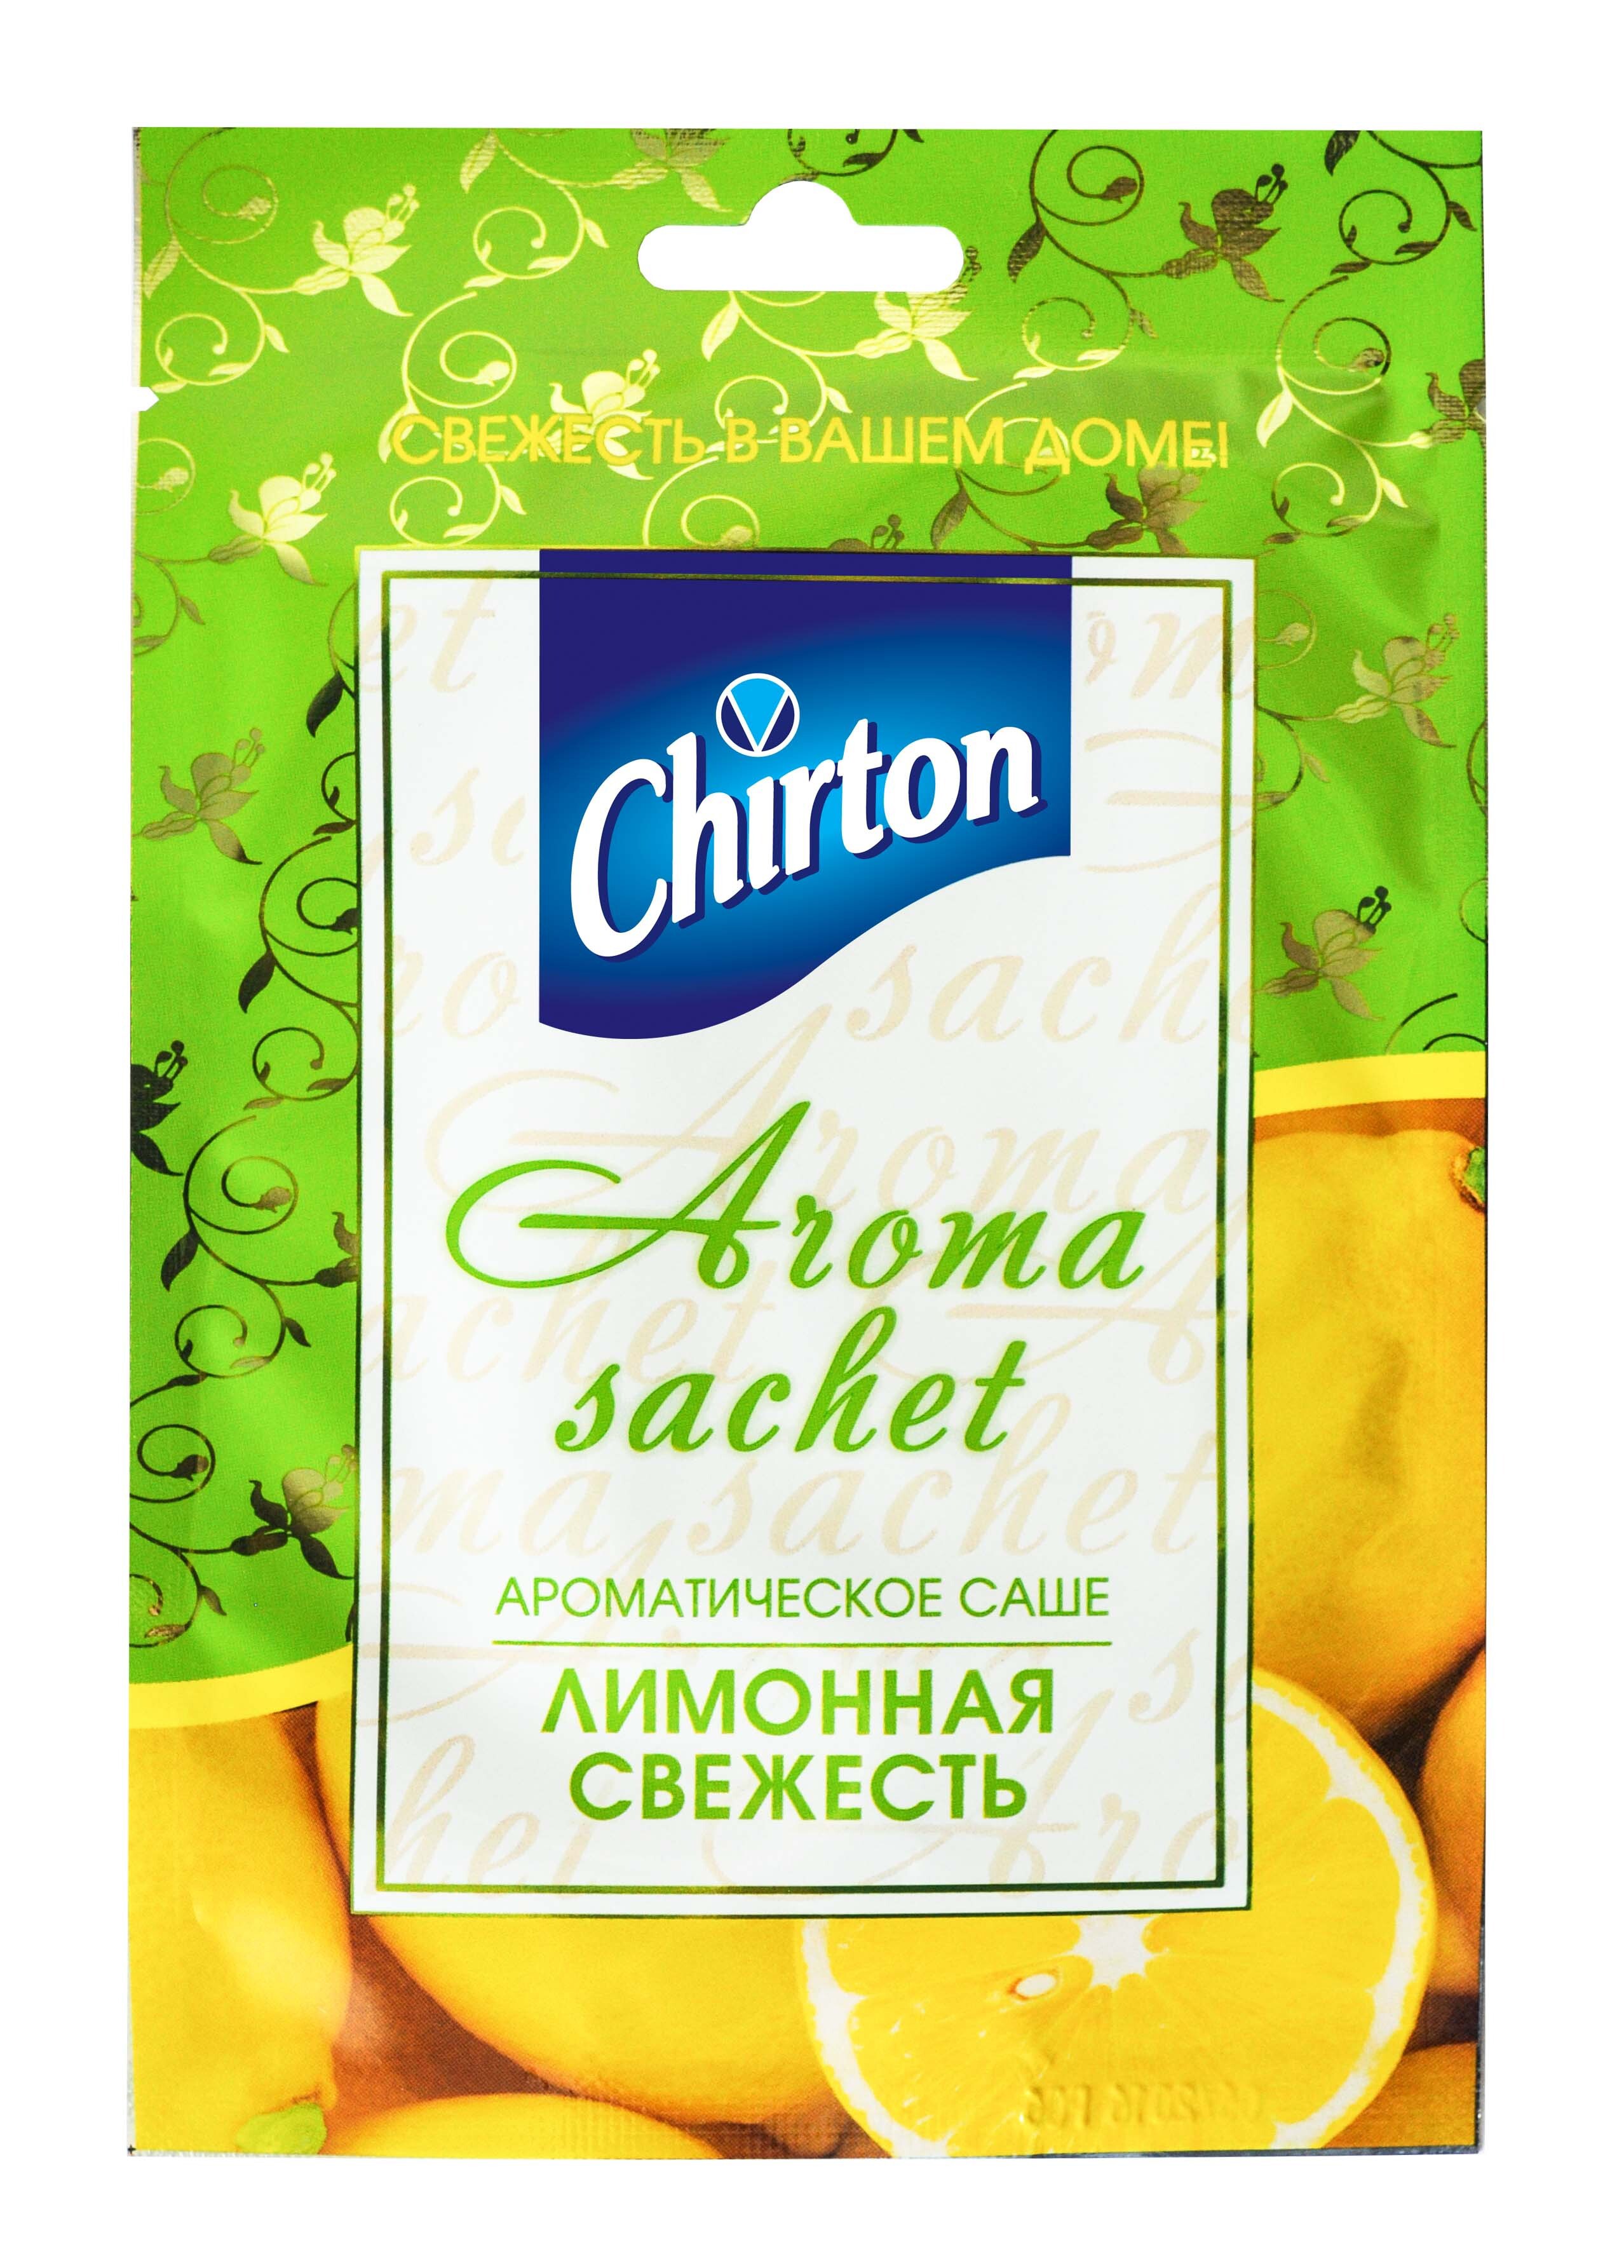 Aroma sachet ЛИМОННАЯ СВЕЖЕСТЬ (ароматическое саше), Chirton, 1 шт.